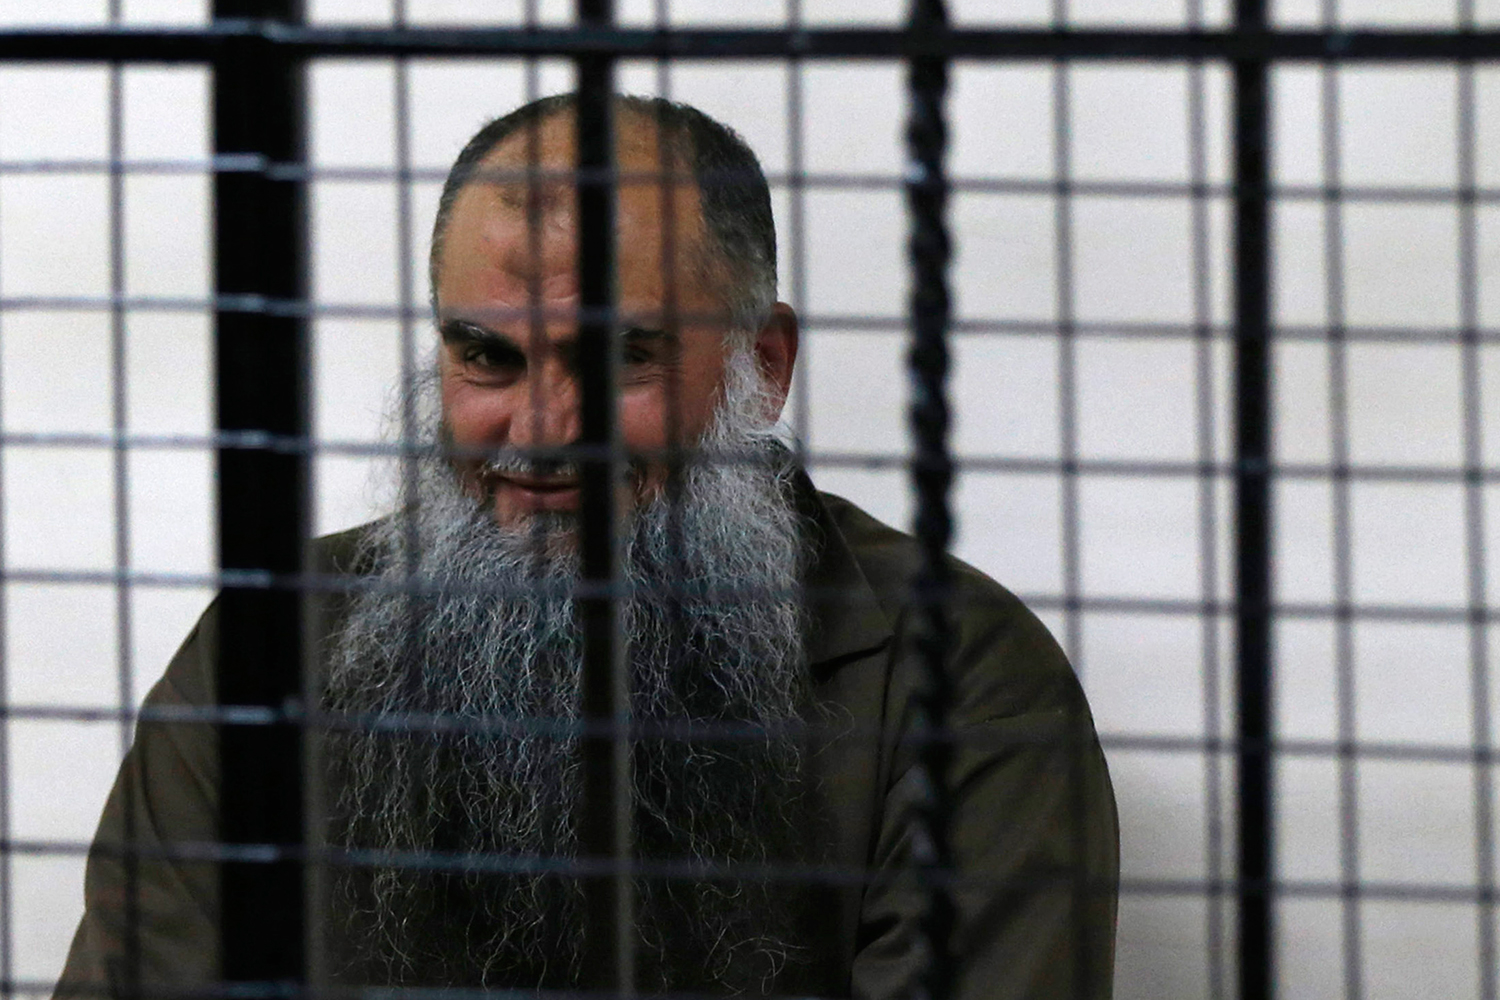 Presos extremistas islámicos obligan a pagar "impuestos de protección" a prisioneros no musulmanes